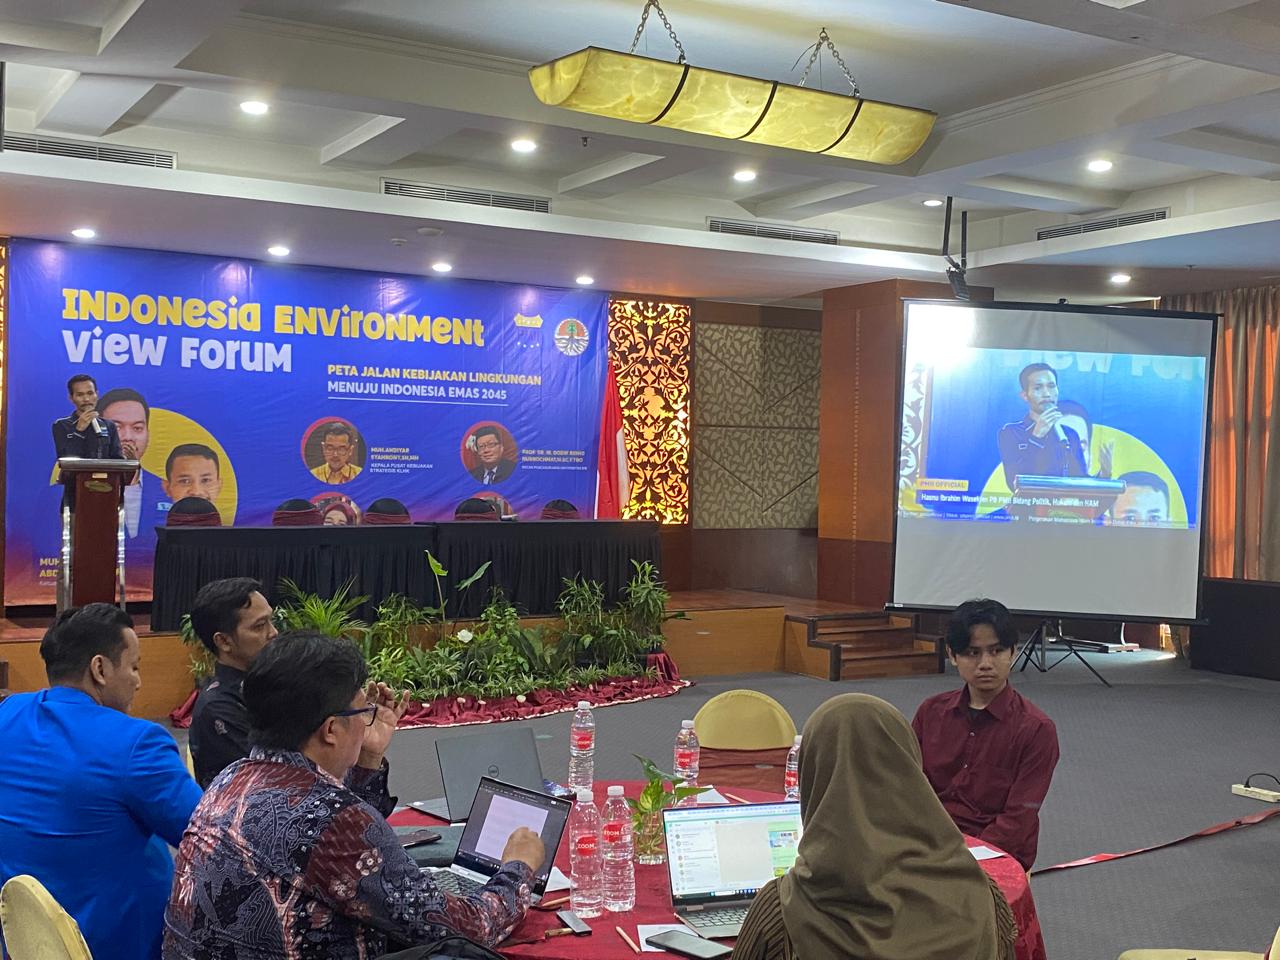 PMII Gelar Forum Lingkungan: Evaluasi Kebijakan Menuju Indonesia Emas 2045